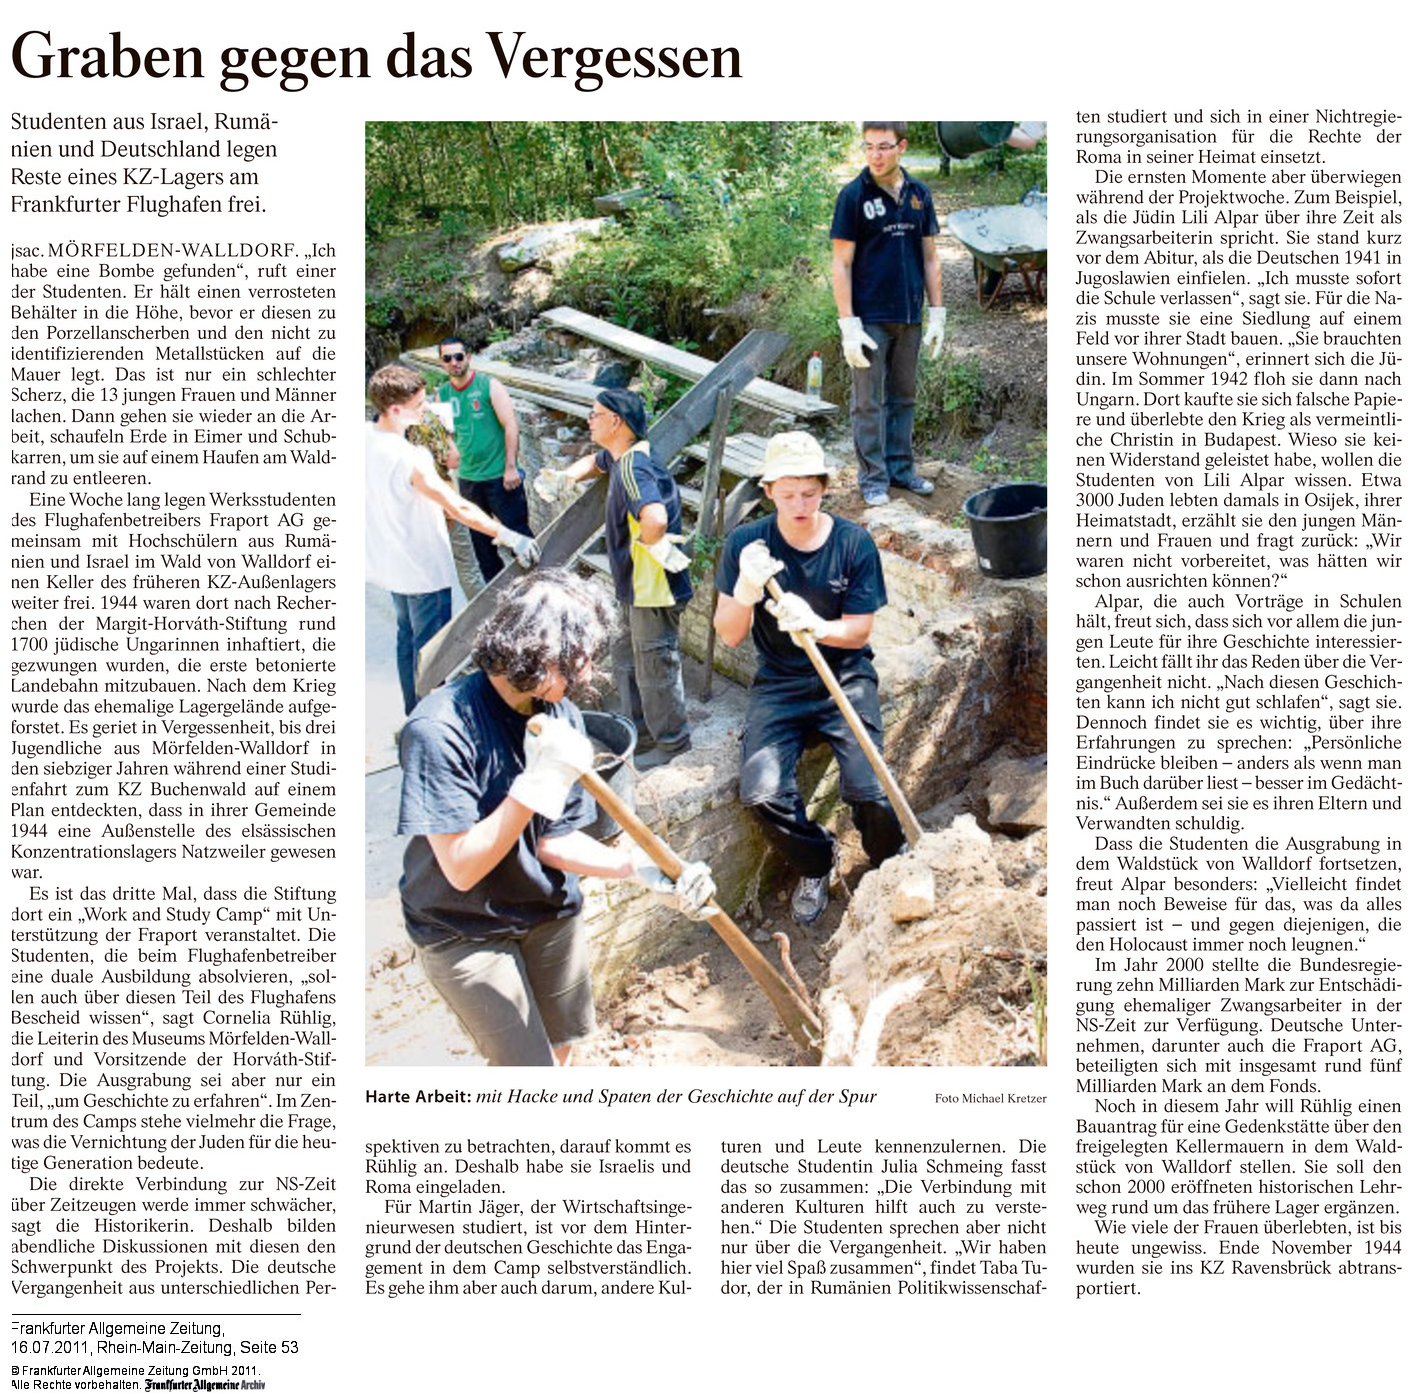 Berichterstattung in der Frankfurter Allgemeinen Zeitung vom 16. Juli 2011